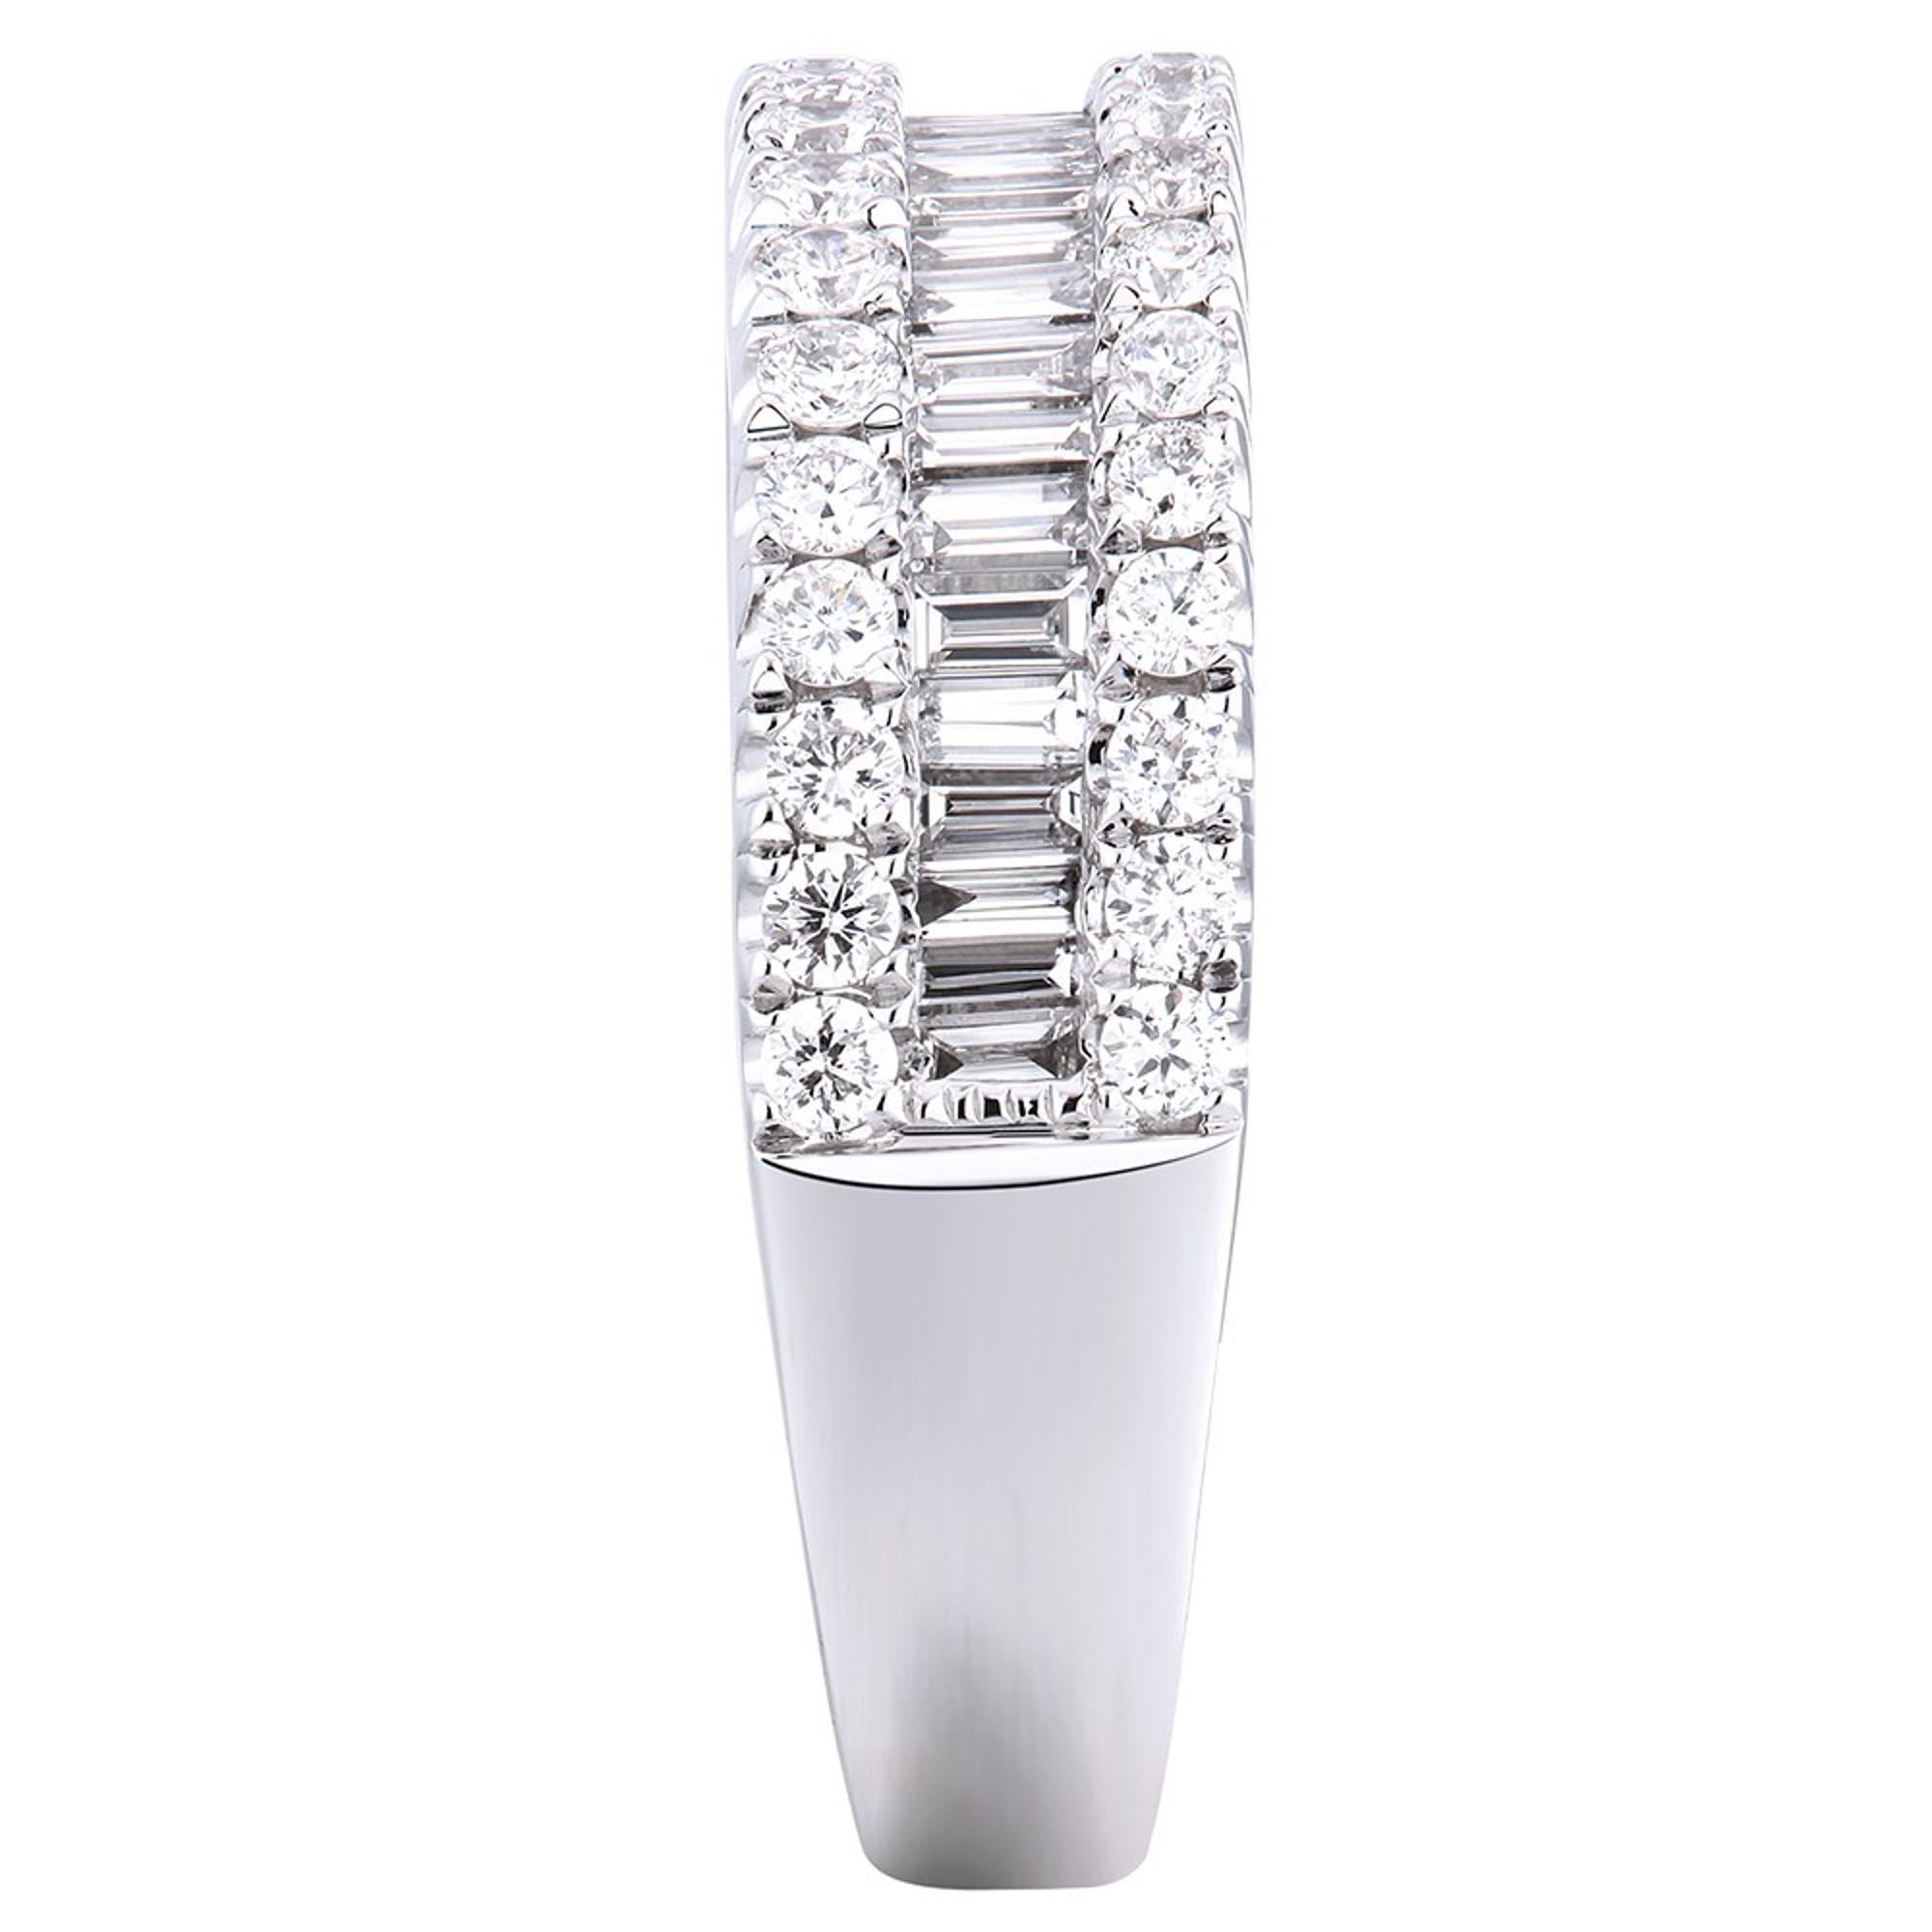 Baguette Cut Rachel Koen Pave Diamond Ladies Ring Platinum 1.15cttw For Sale